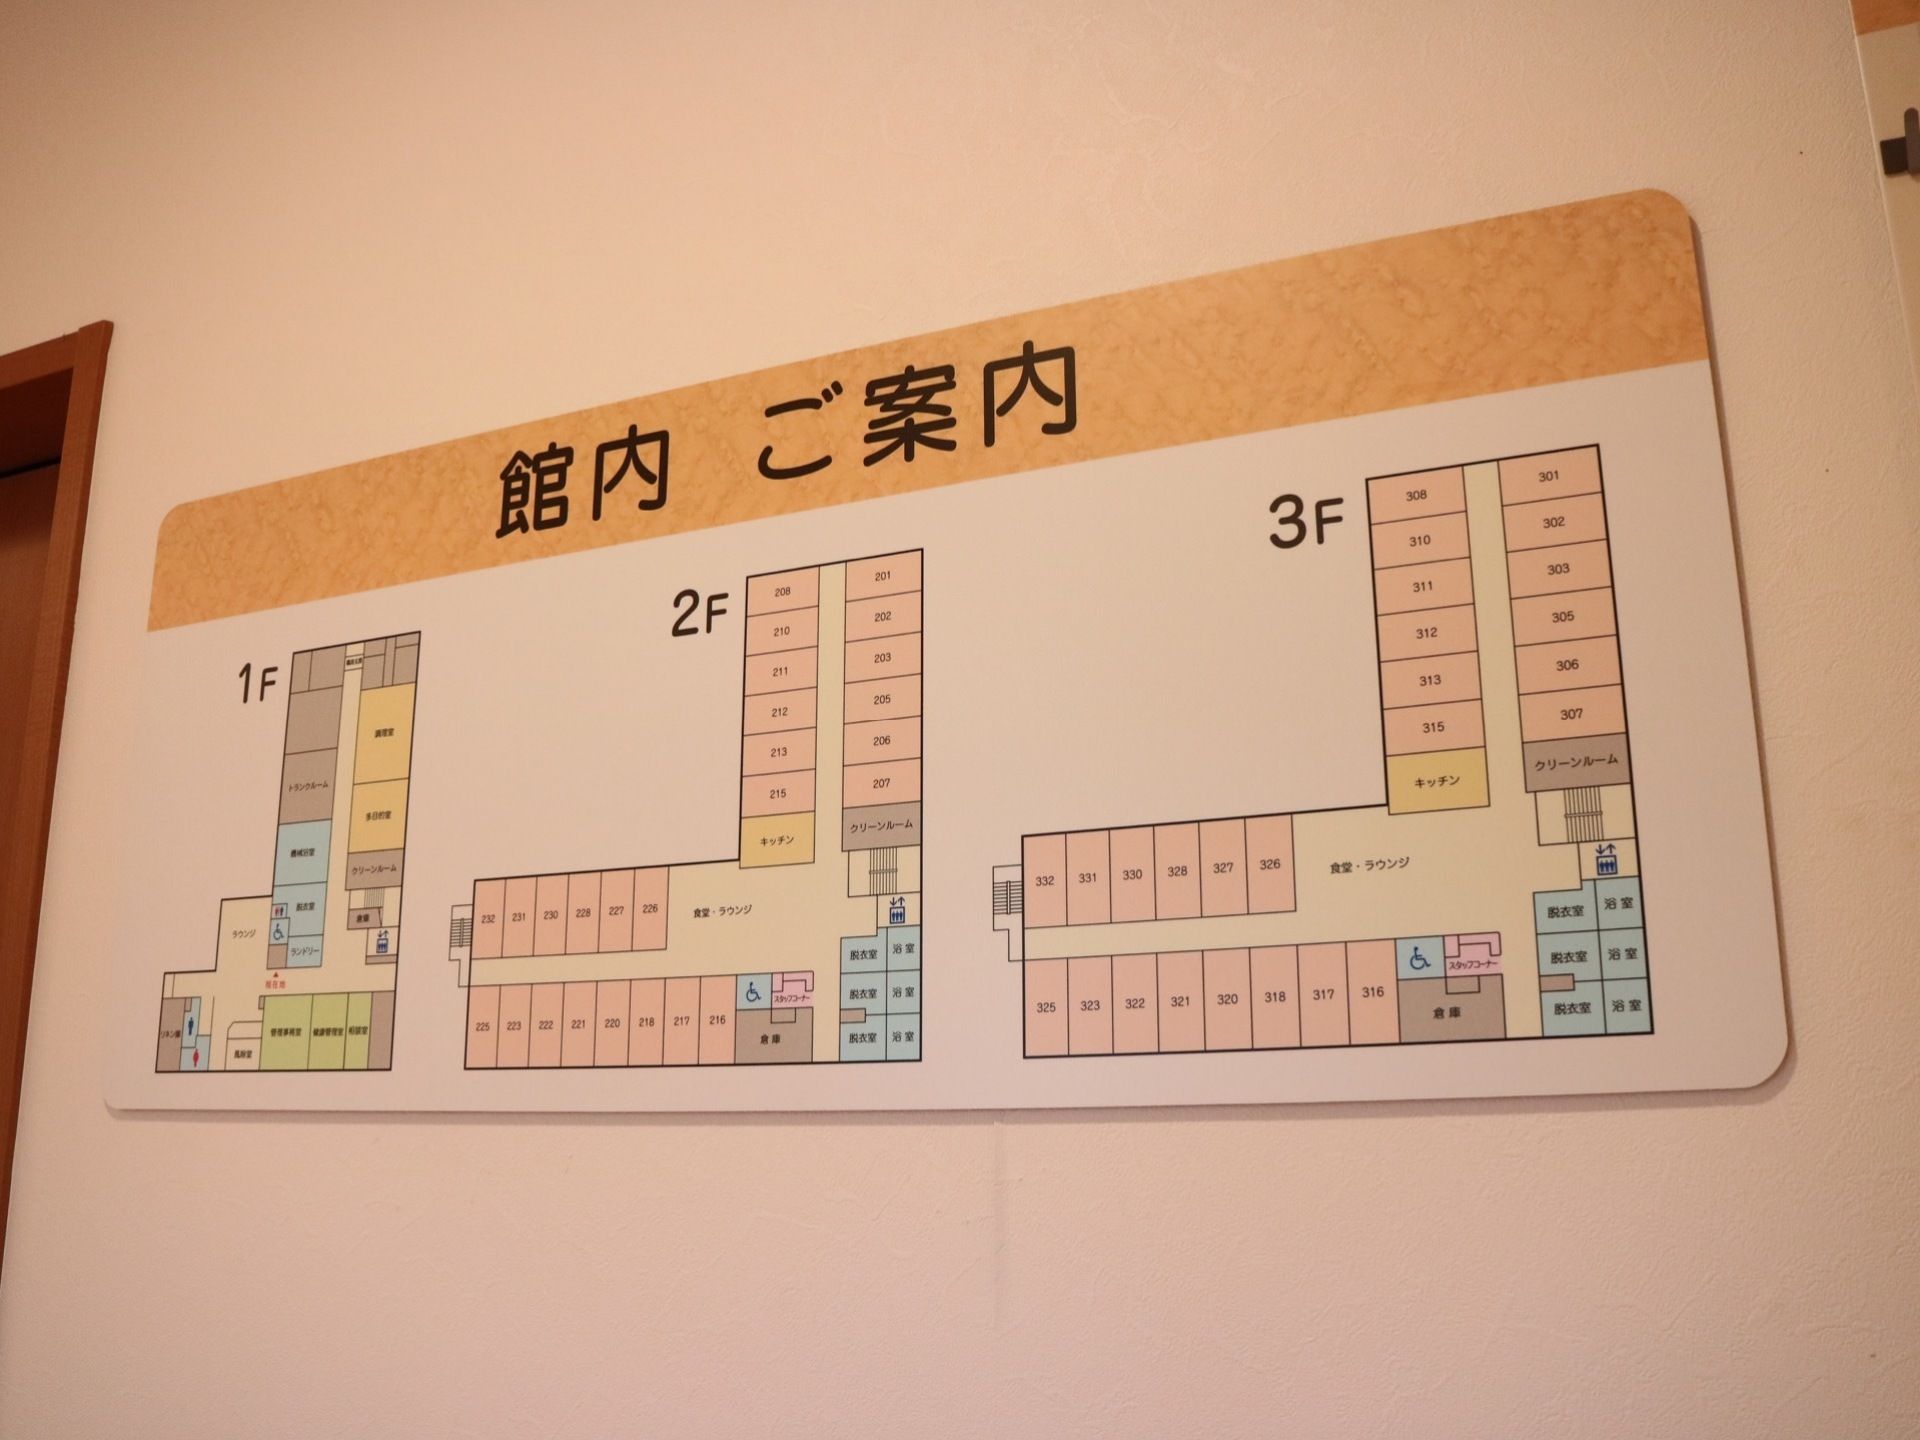 施設の全体を表した見取図である。３階建てとなっており、フロアごとに居室や脱衣所などが詳細に記載されている。